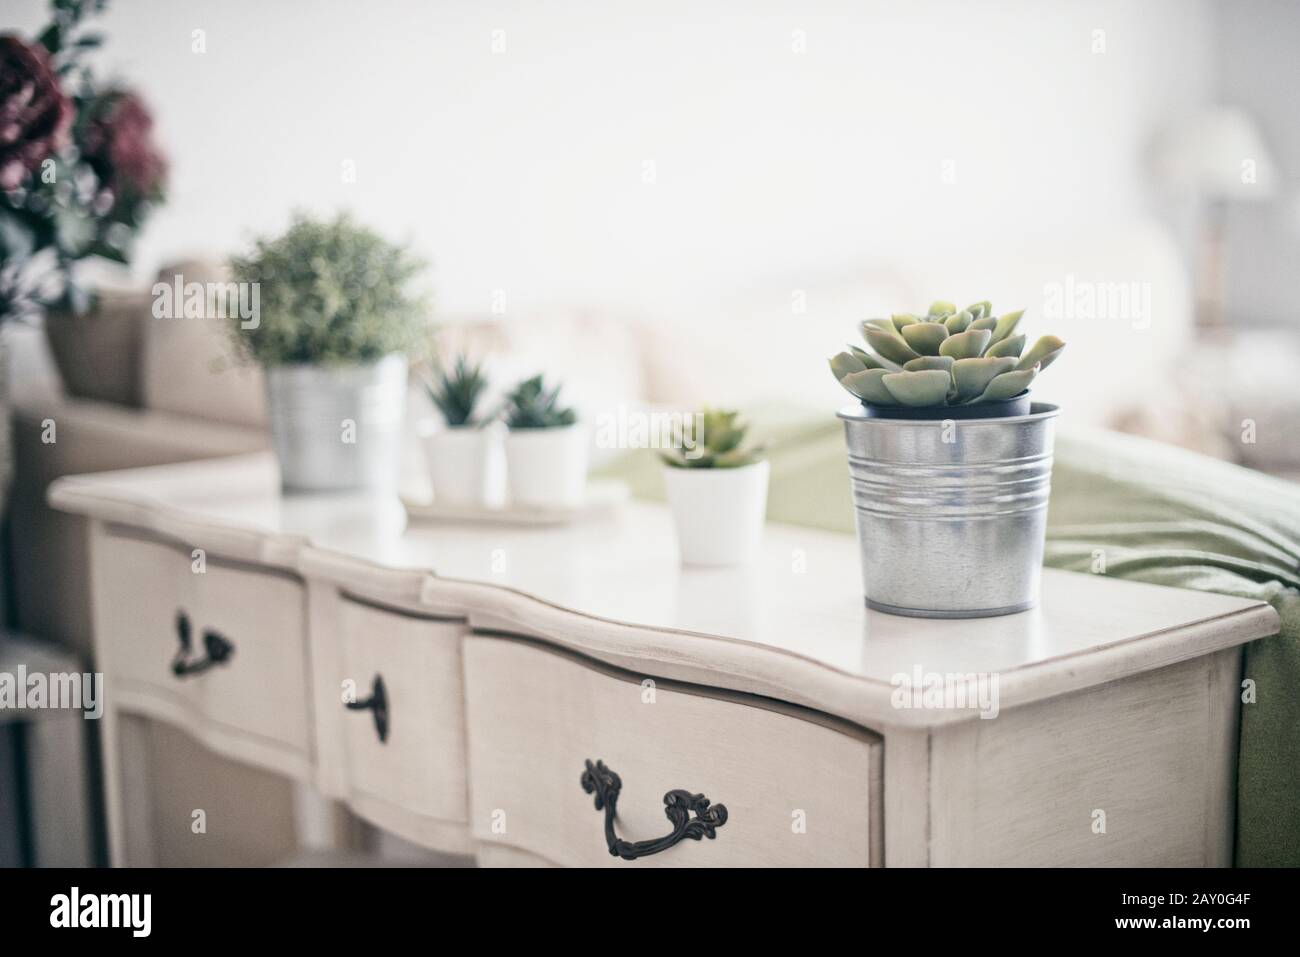 Plantas suculentas en una tabla lateral en una sala de estar Foto de stock